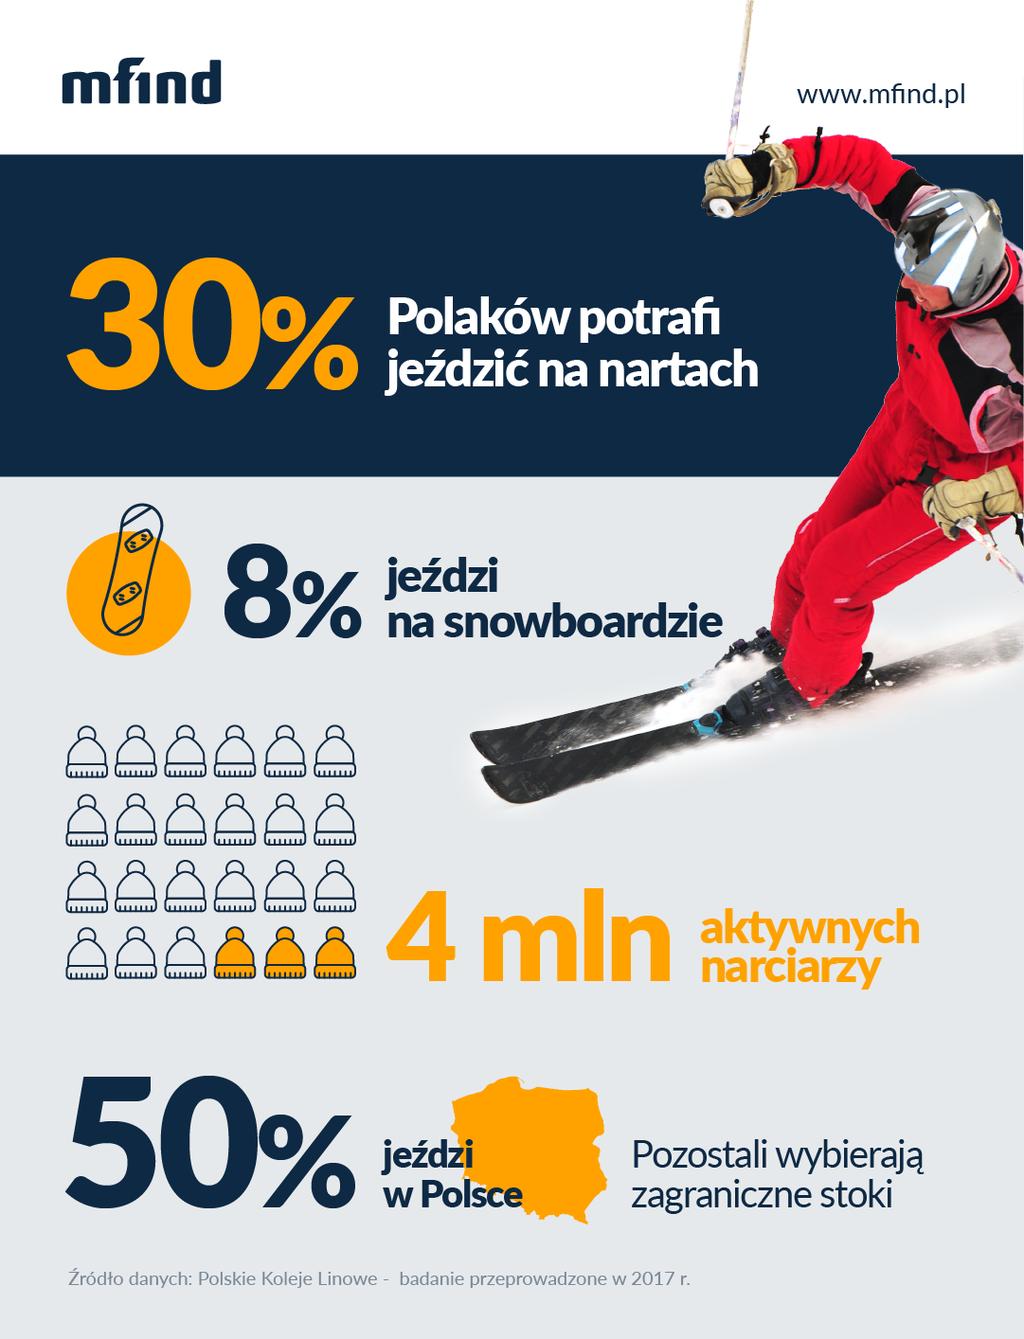 Bezpieczeństwo na nartach czy Polacy jeżdżą bezpiecznie?